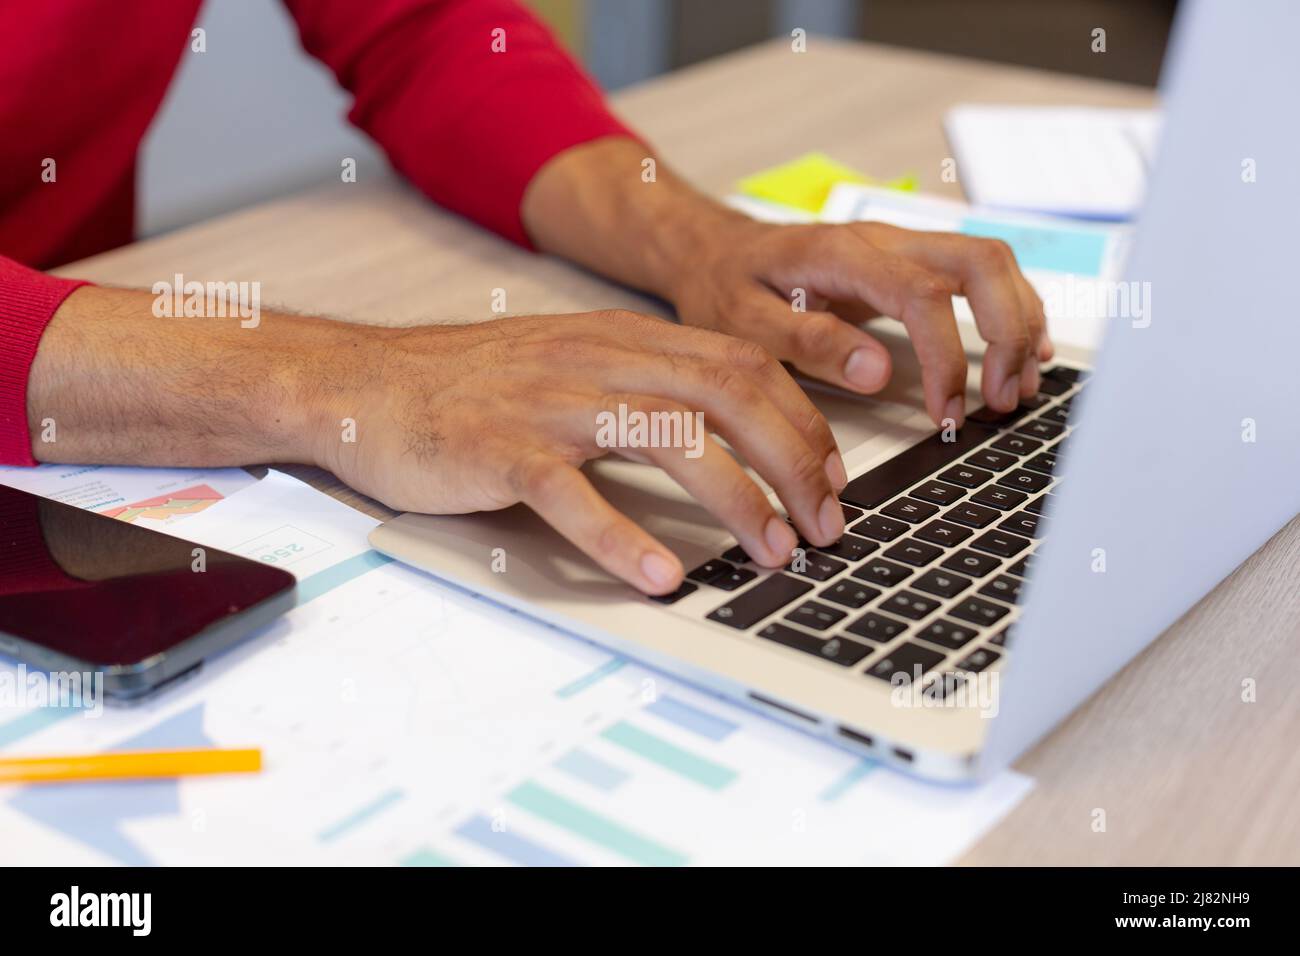 Mittelteil des hispanischen männlichen Beraters, der während der Arbeit am Arbeitsplatz auf der Laptop-Tastatur tippt Stockfoto